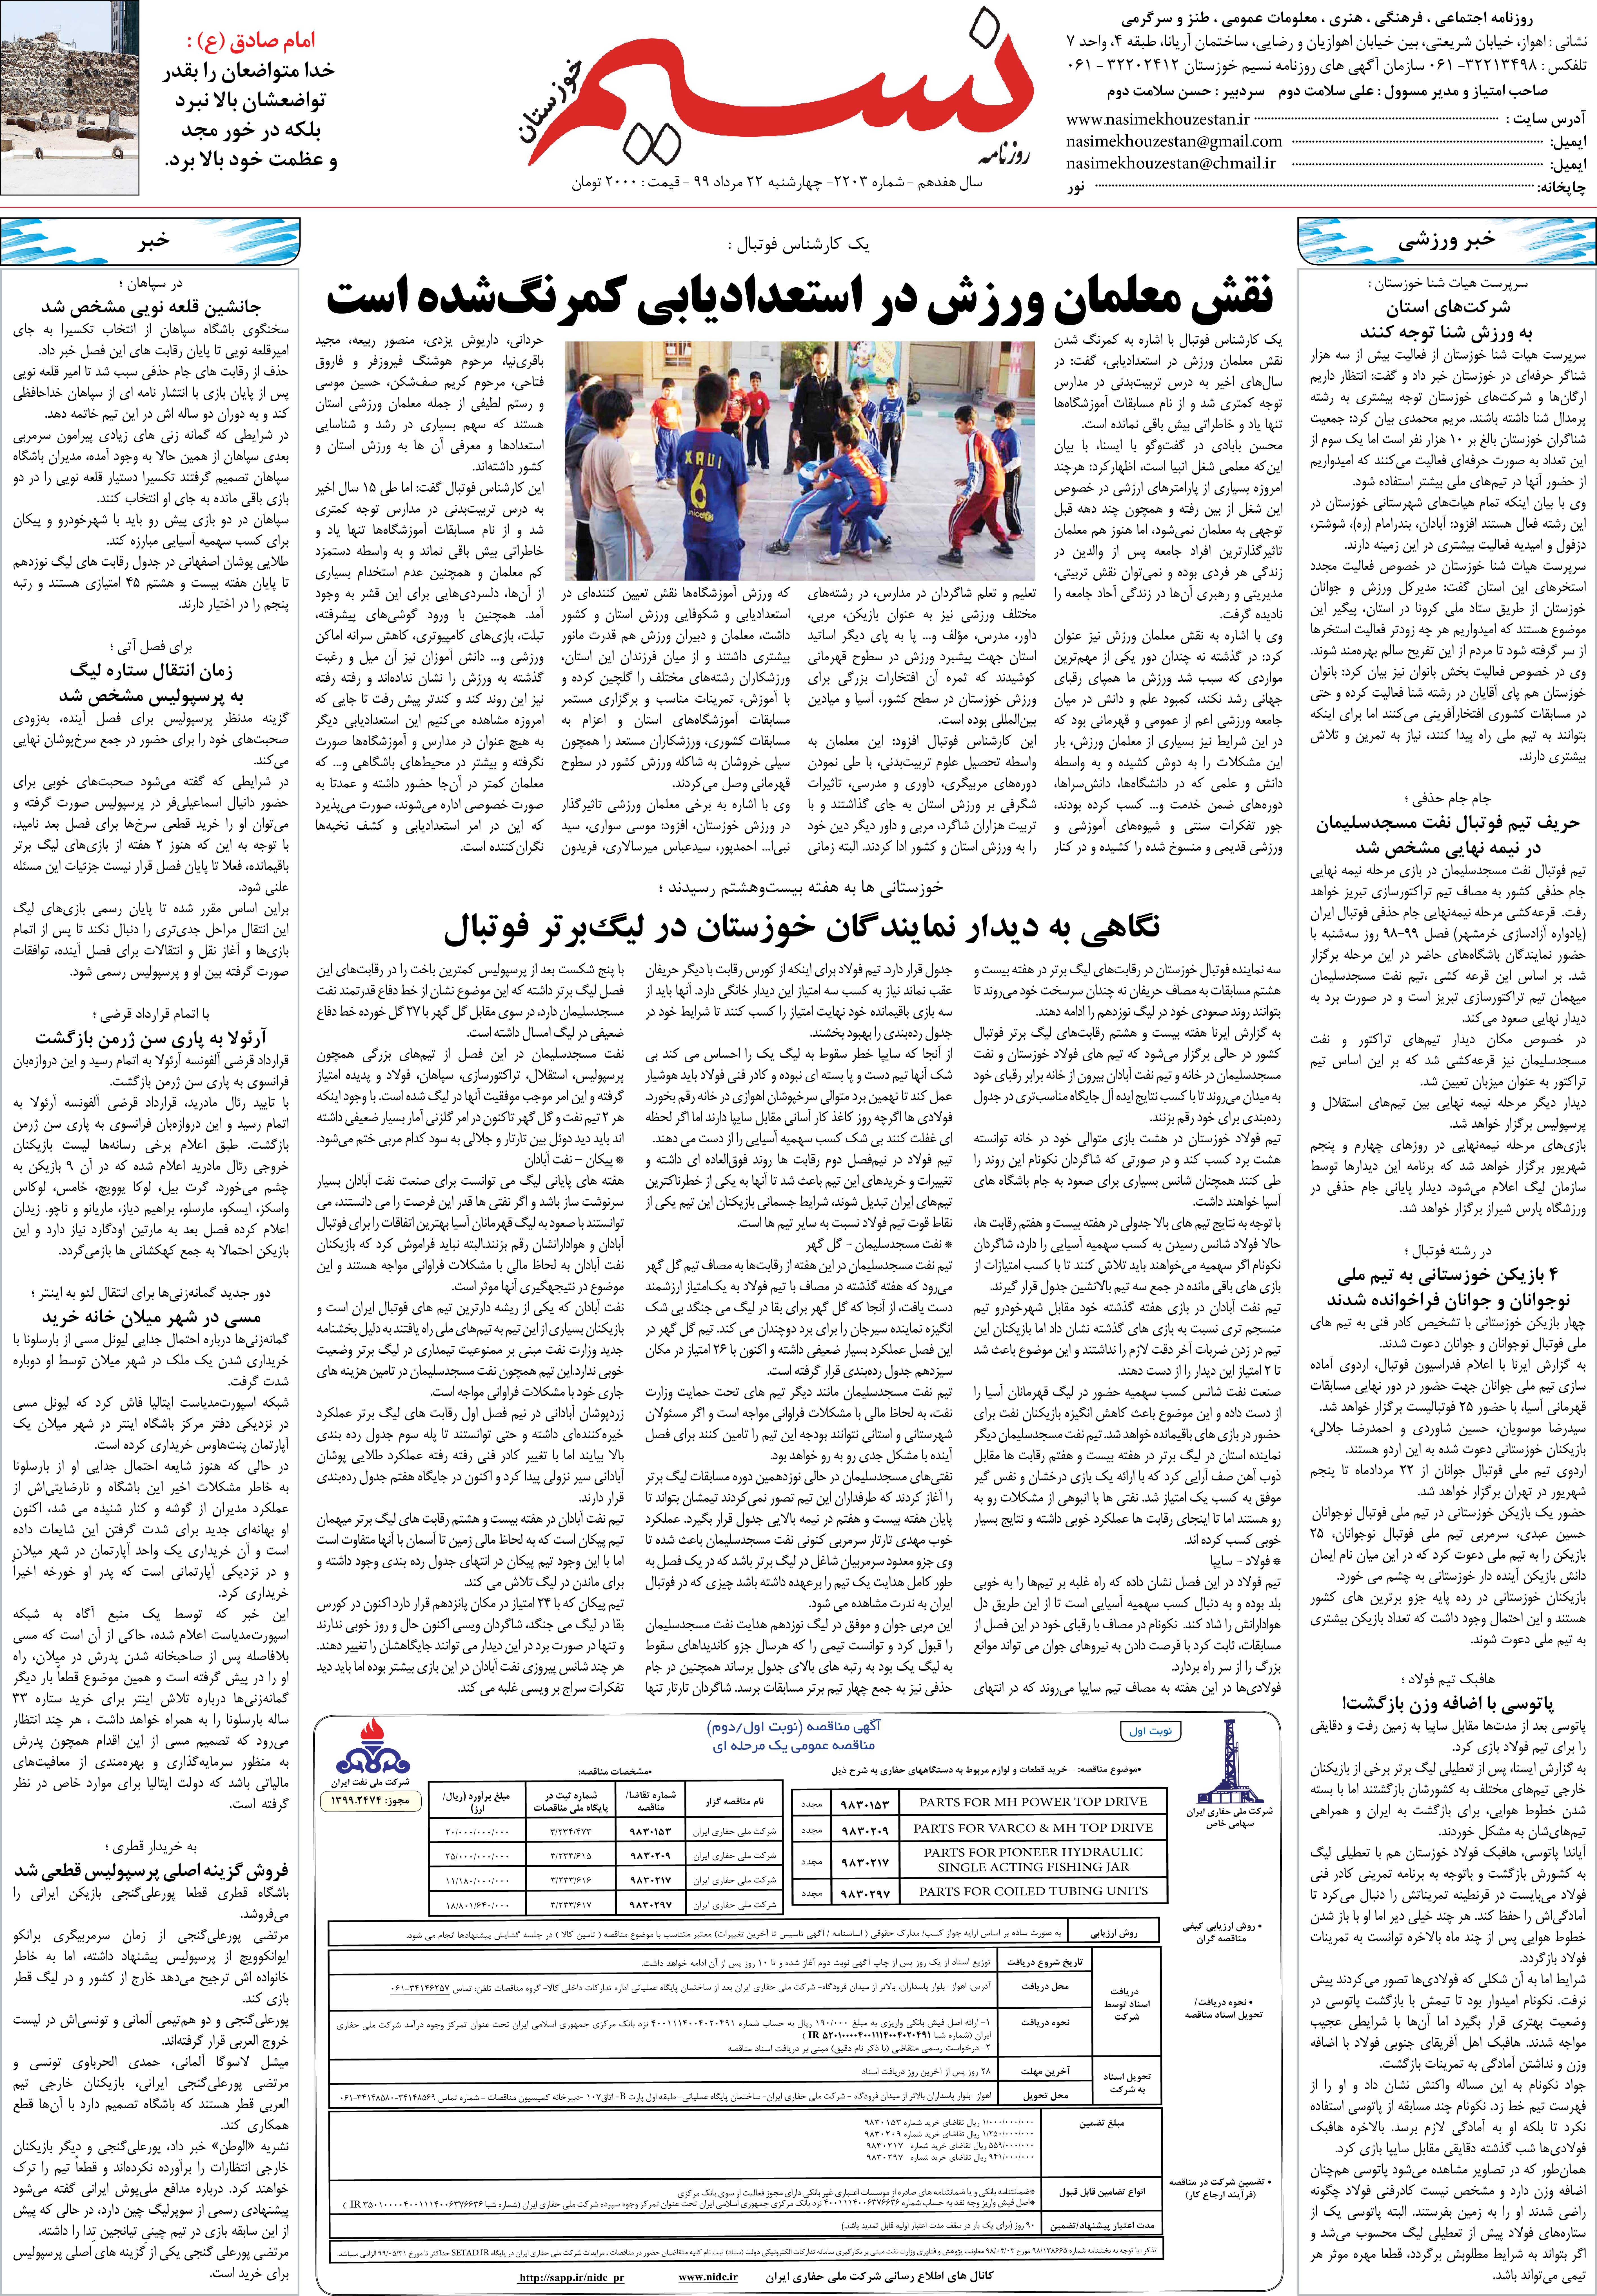 صفحه آخر روزنامه نسیم شماره 2203